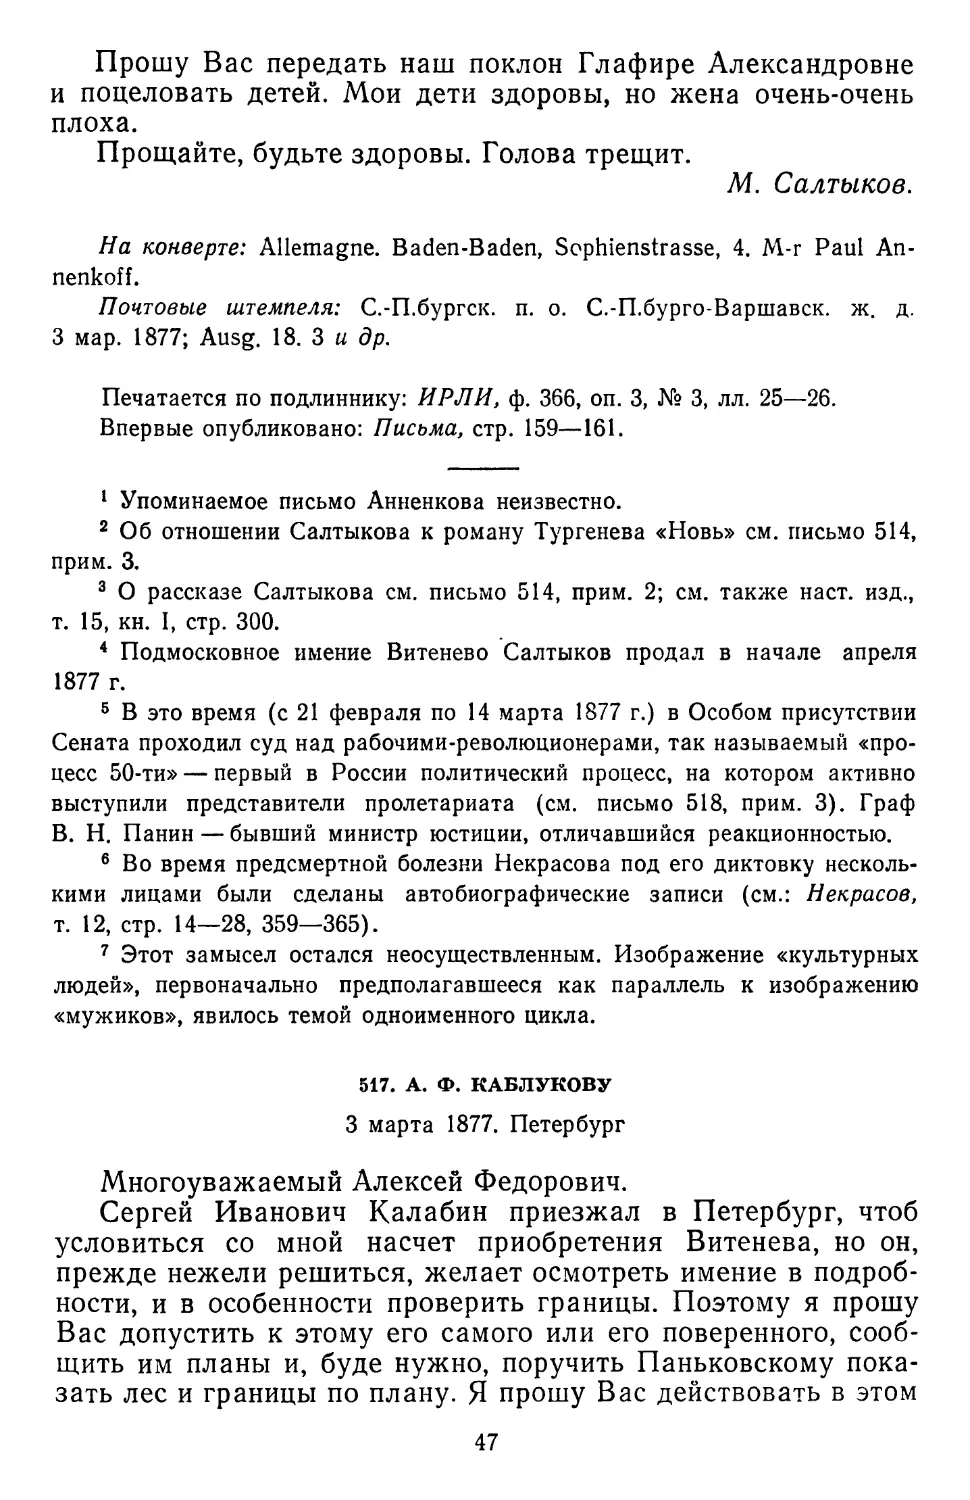 517.А.Ф. Каблукову. 3 марта 1877.Петербург